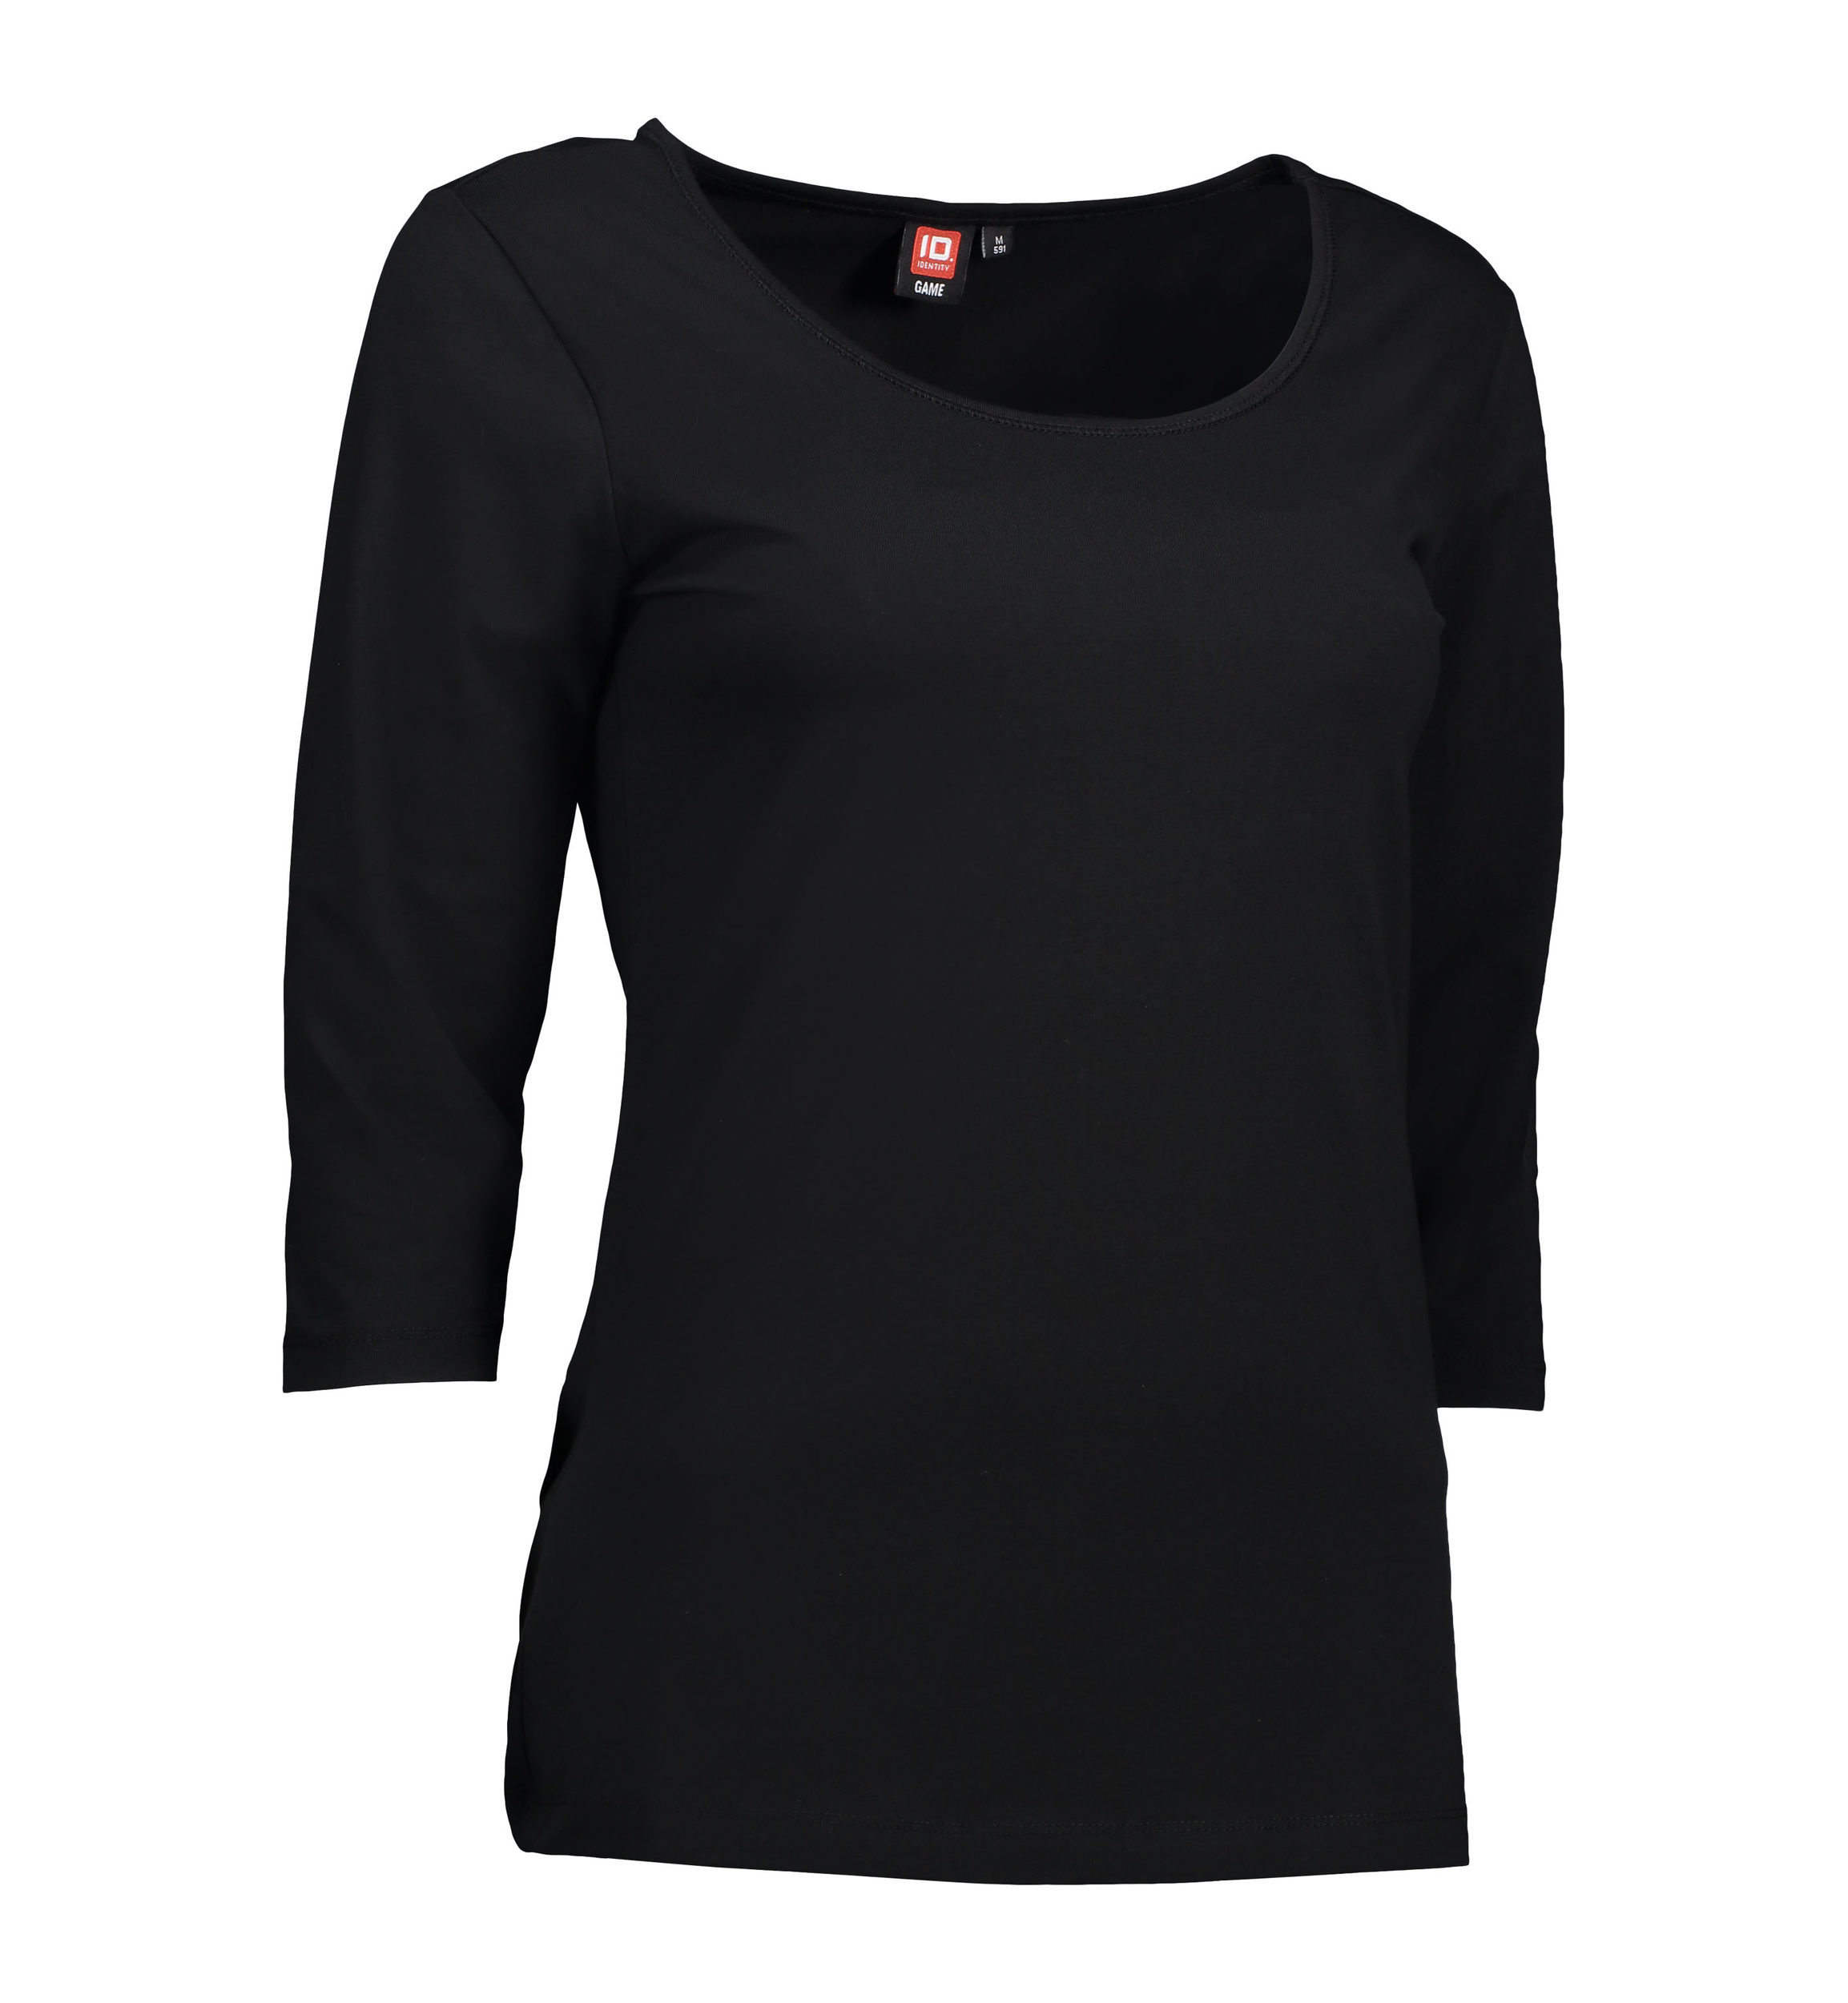 Se 3/4-ærmet dame t-shirt i sort - M hos Sygeplejebutikken.dk